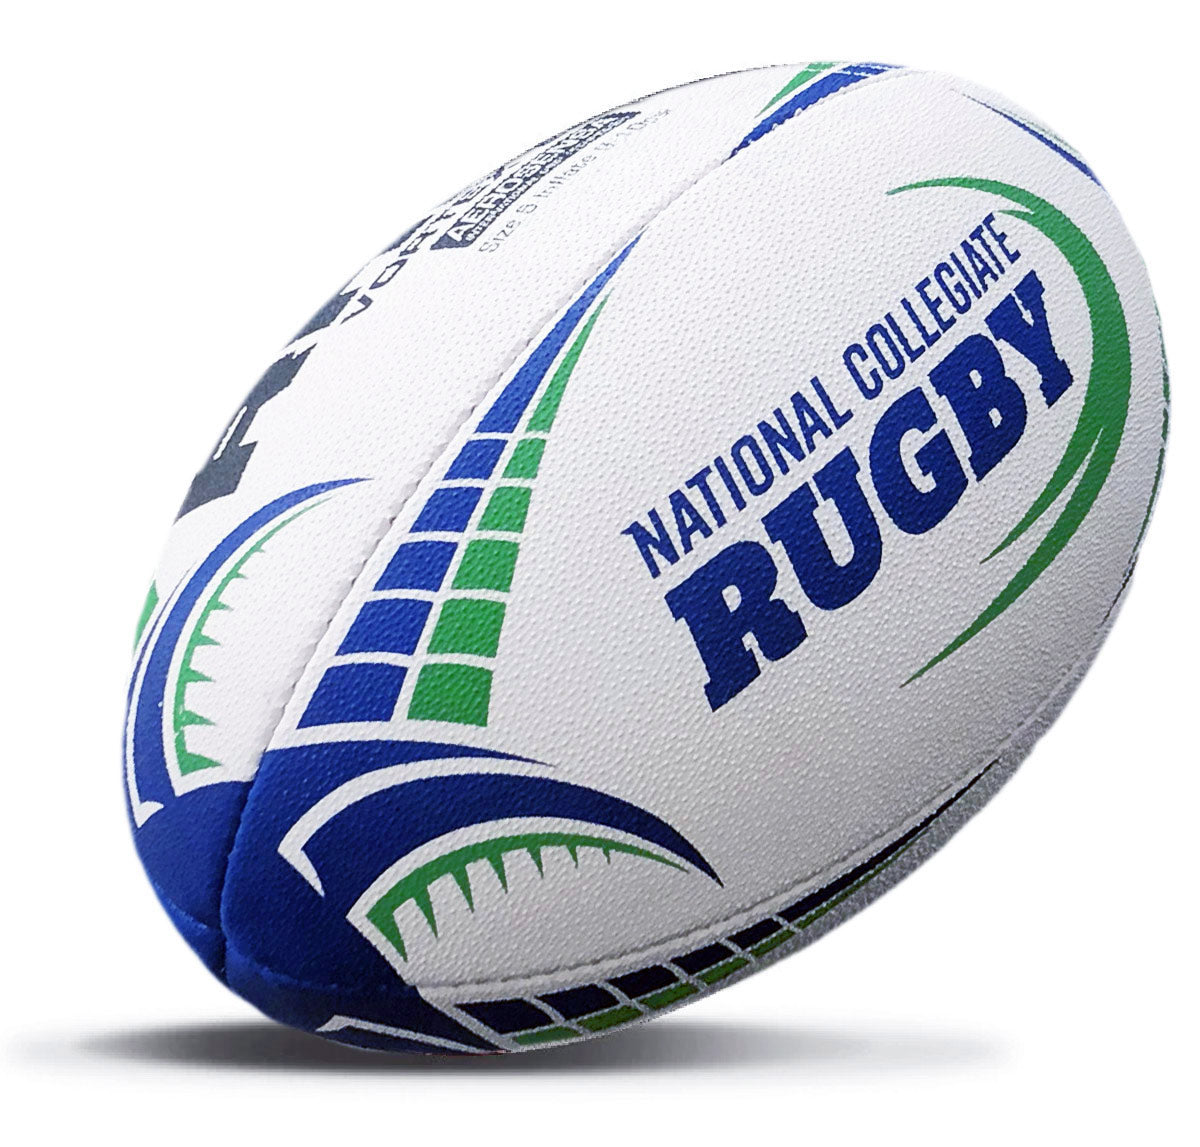 Get latest Rhino Vortex Elite Match Rugby Ball at best price. – Rhino Rugby